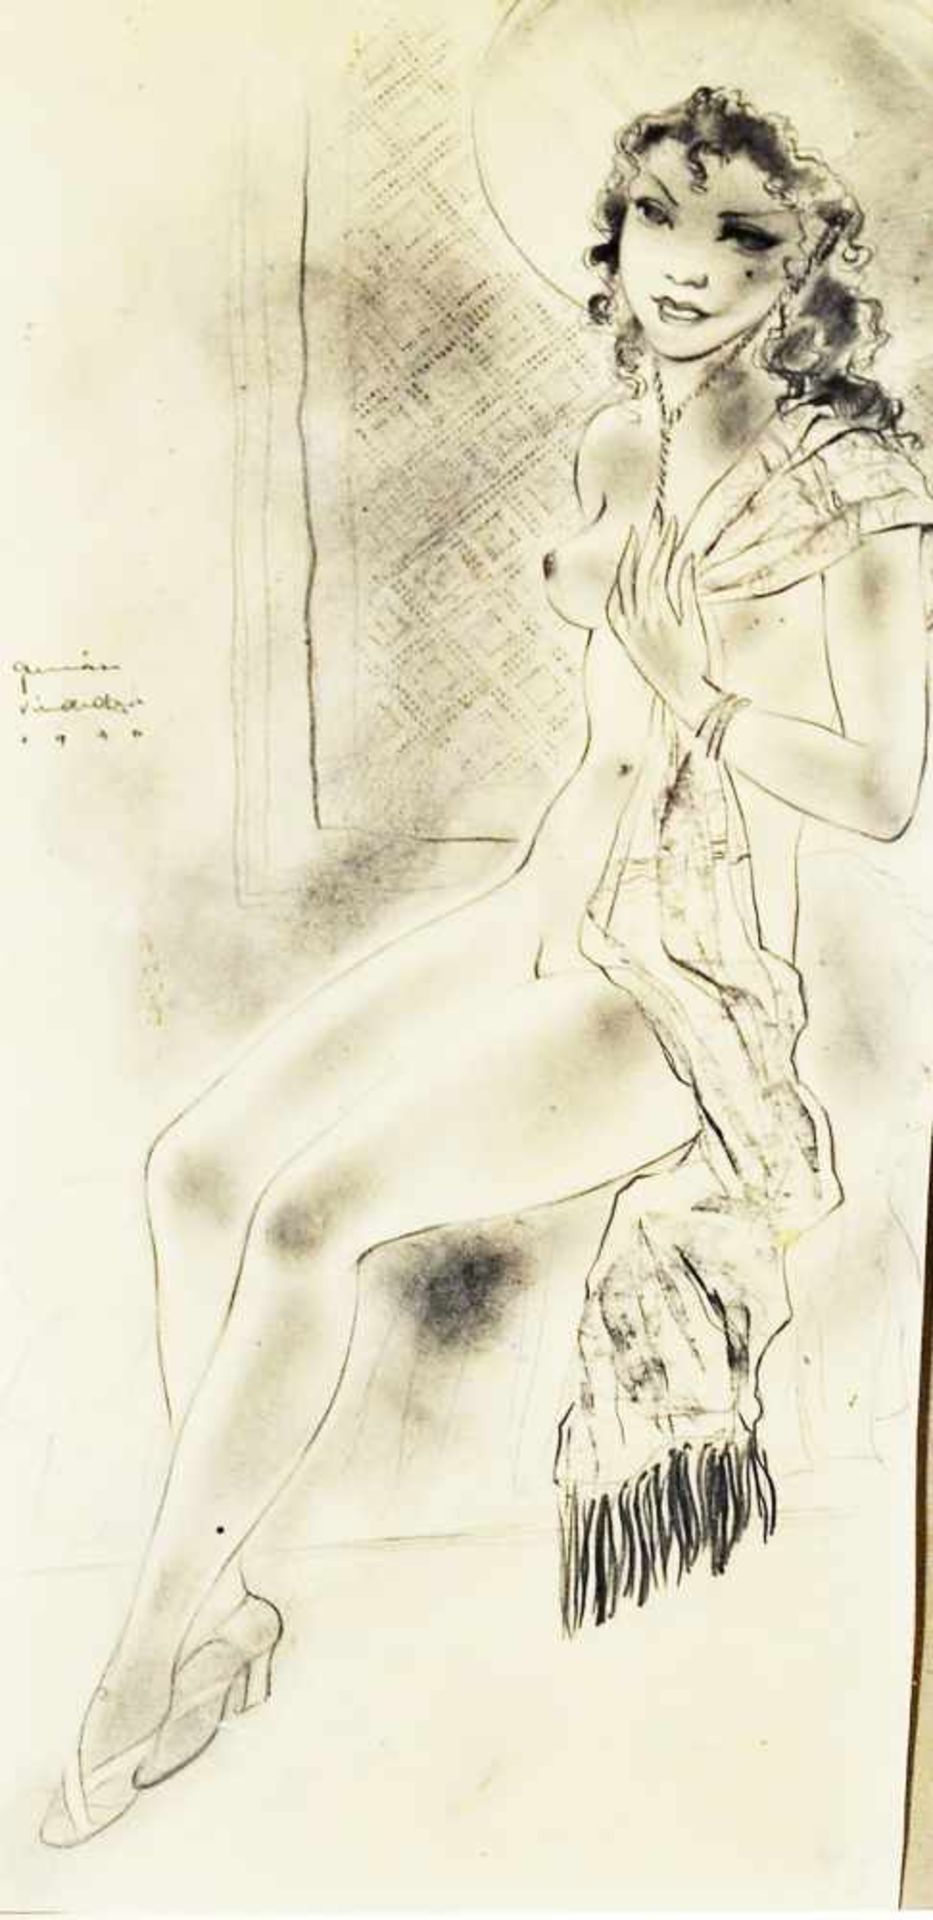 Vindedzis, Gunars (1918-1991)"Sitzendes nacktes Mädchen", Bleistiftzeichnung, 33 x 16 cm, links